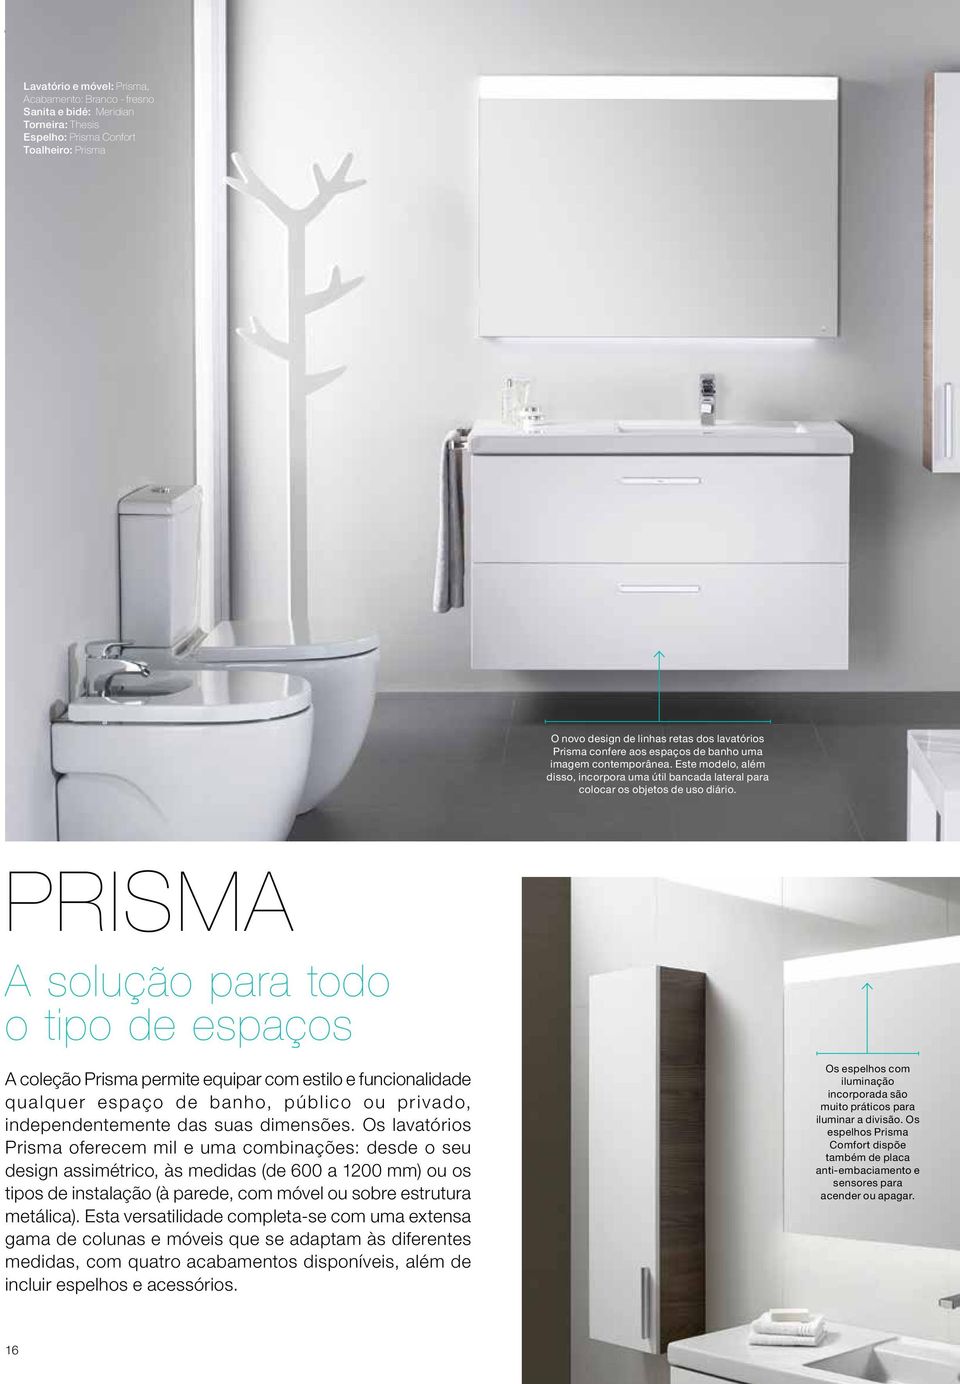 PRISMA A solução para todo o tipo de espaços A coleção Prisma permite equipar com estilo e funcionalidade qualquer espaço de banho, público ou privado, independentemente das suas dimensões.